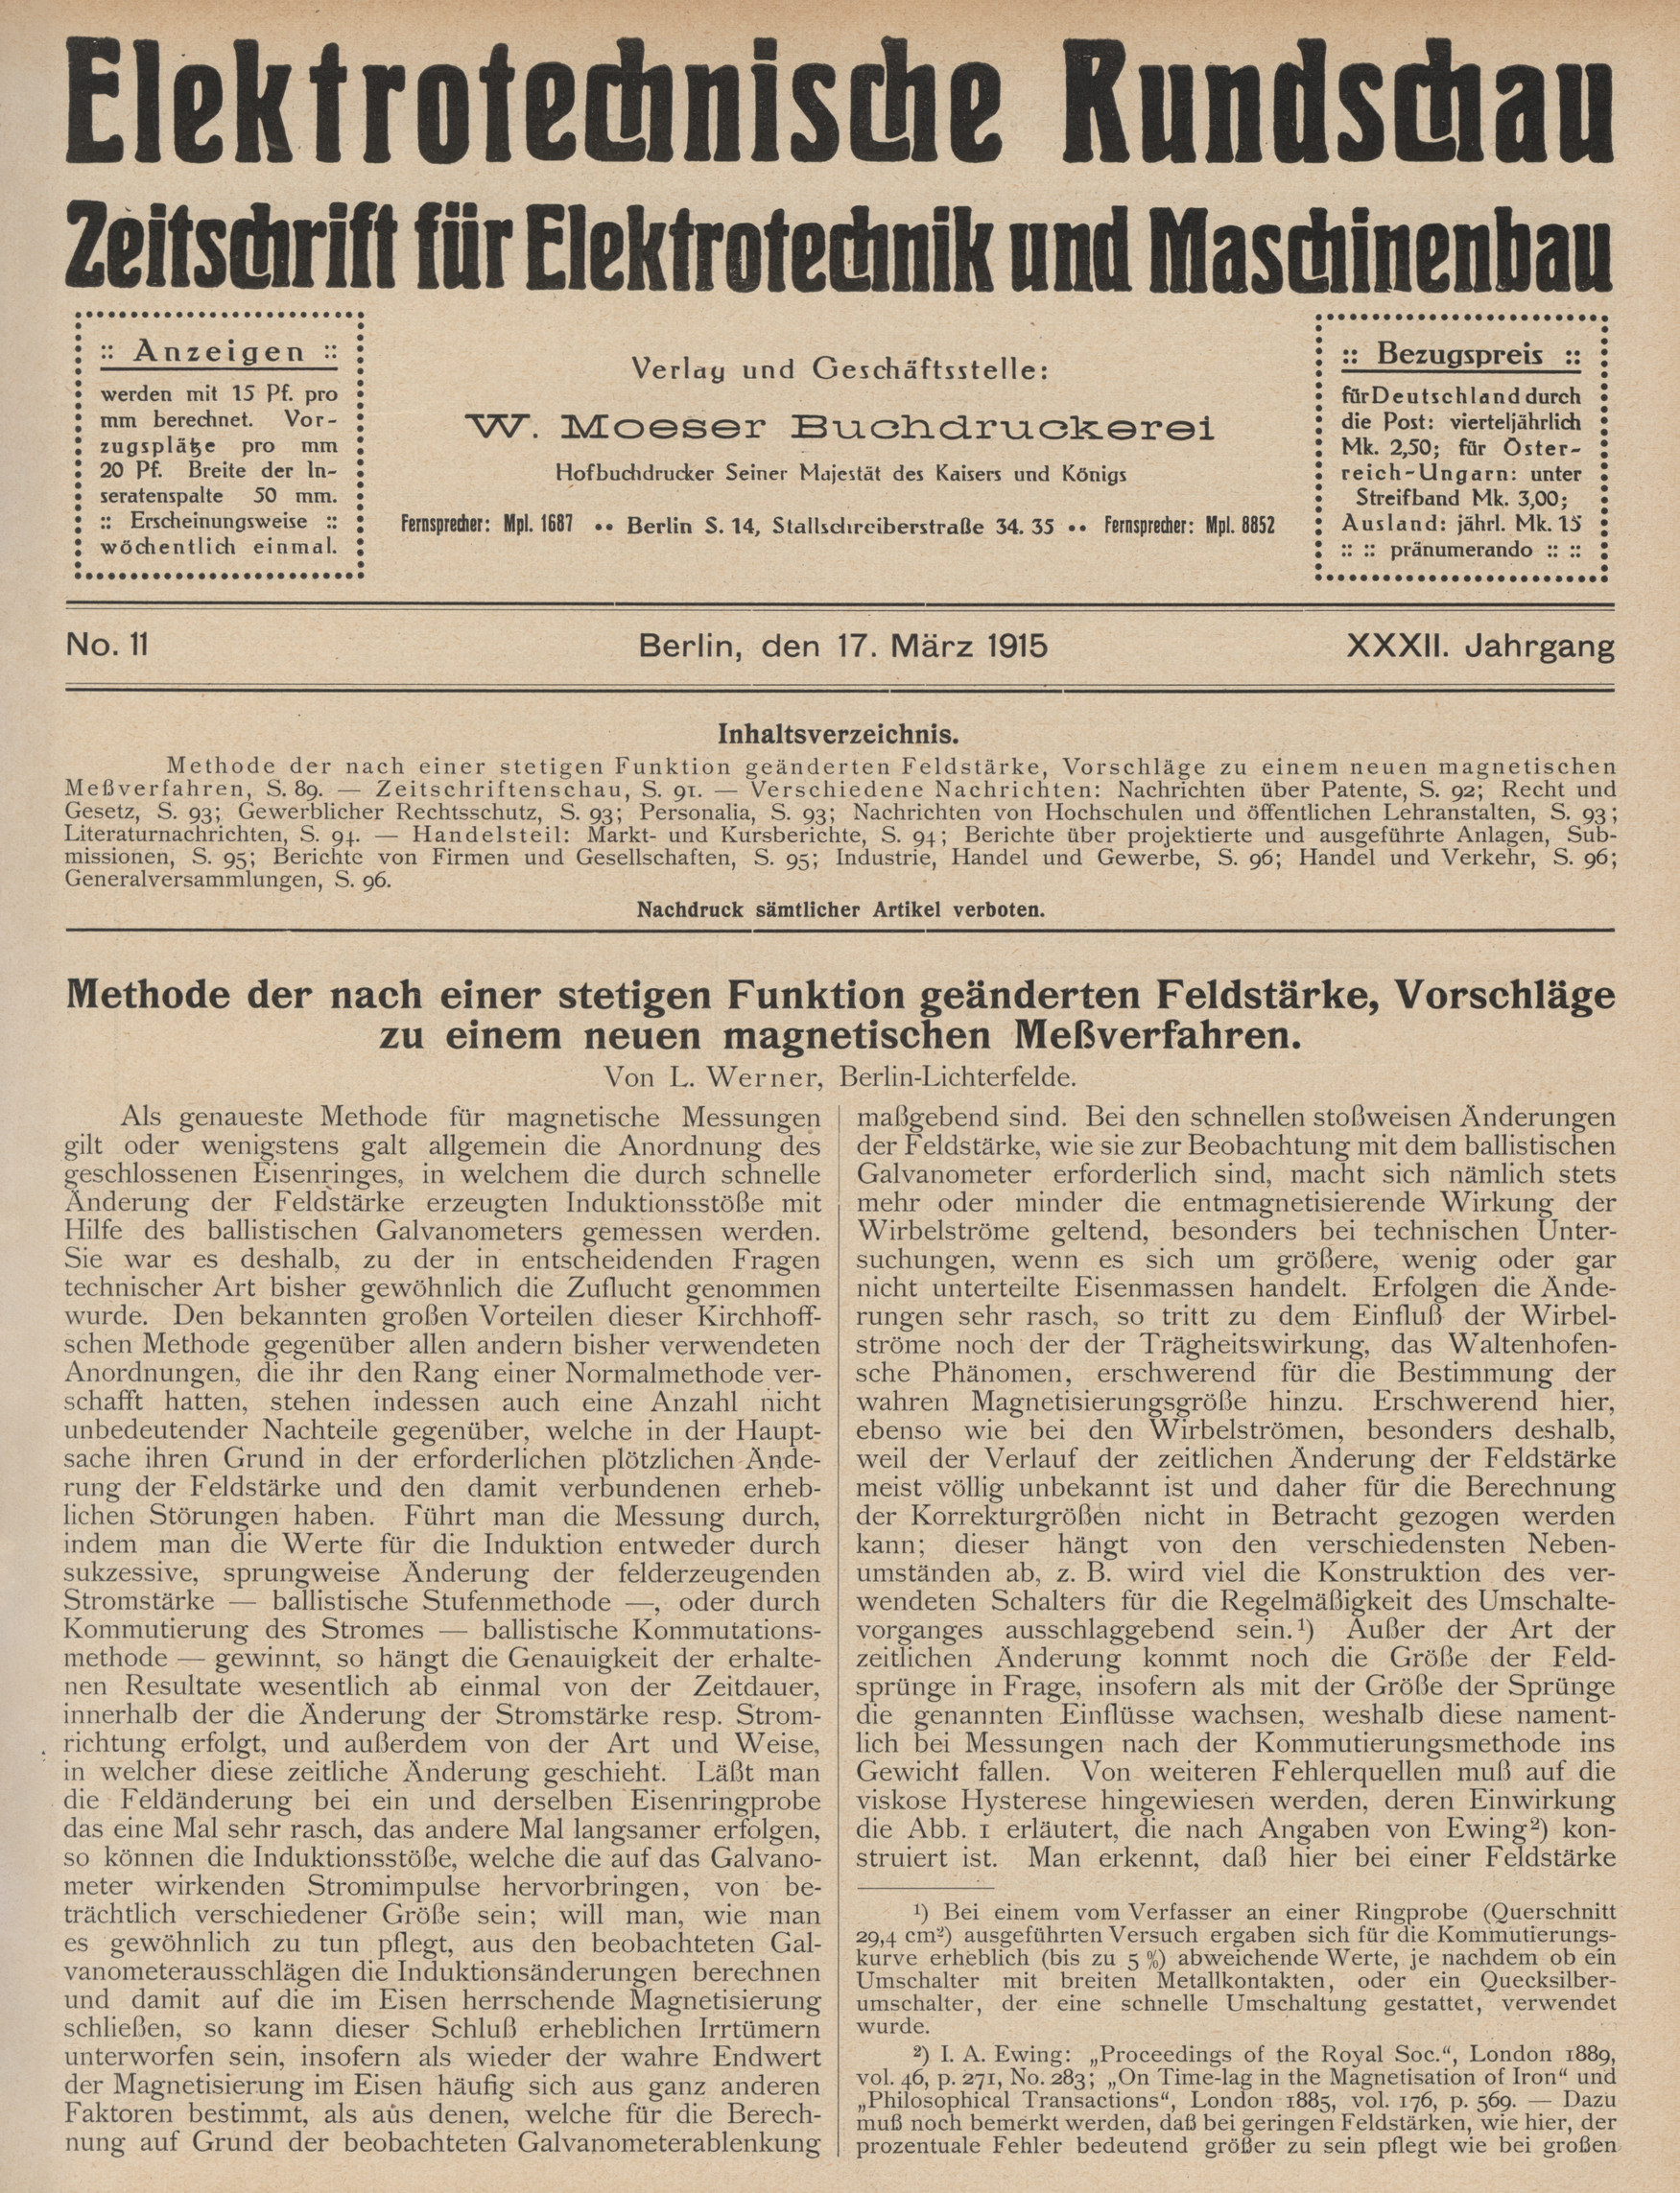 Elektrotechnische Rundschau : Zeitschrift für Elektrotechnik und Maschinenbau + Polytechnische Rundschau, No. 11, XXXII. Jahrgang